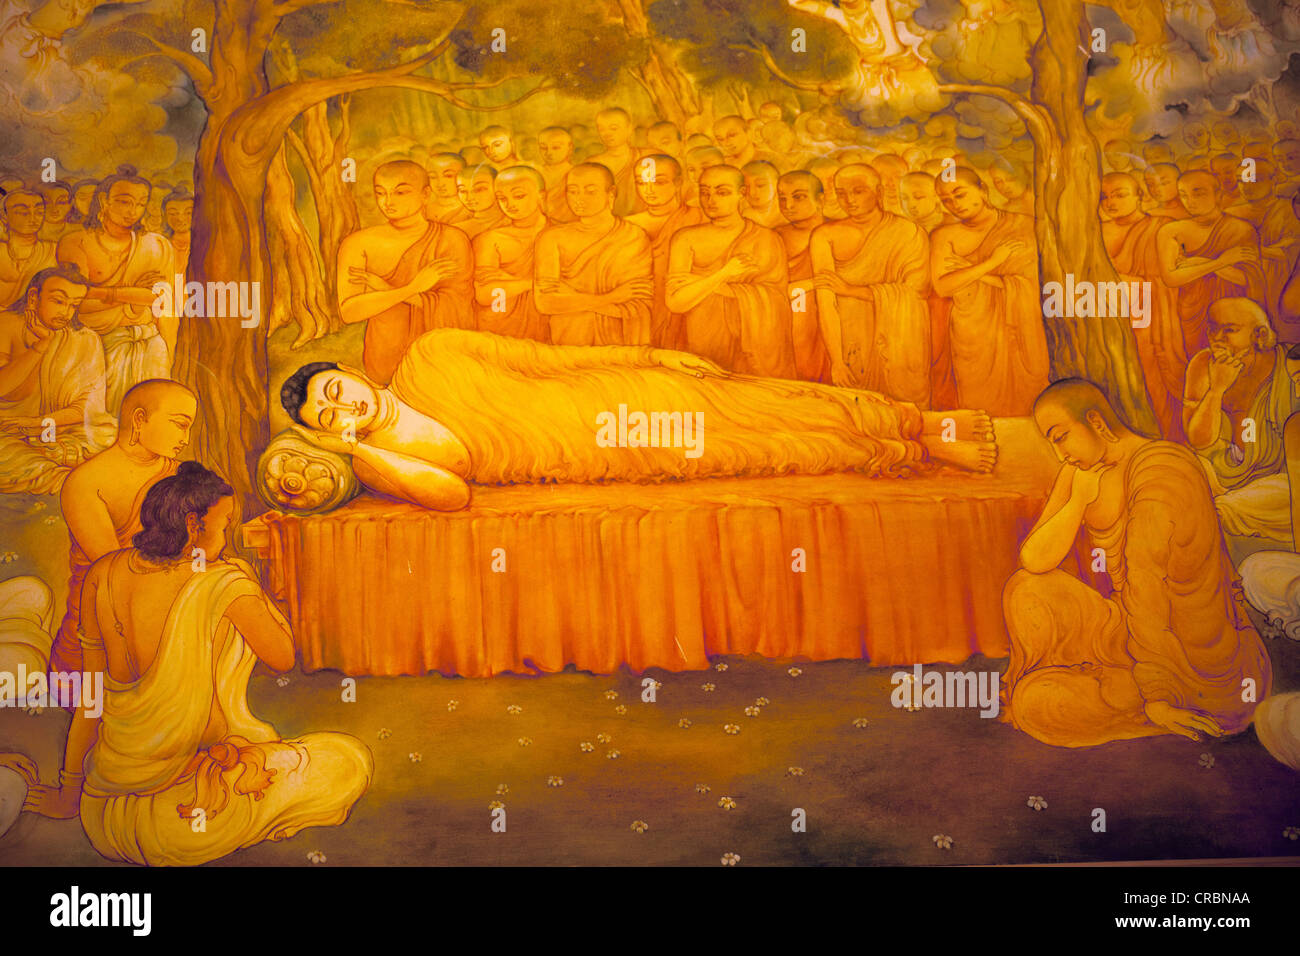 Peinture d'un bouddha couché dans le Temple de la dent, également connu sous le nom de Sri Dalada Maligawa, Kandy, Sri Lanka, de l'Océan Indien Banque D'Images